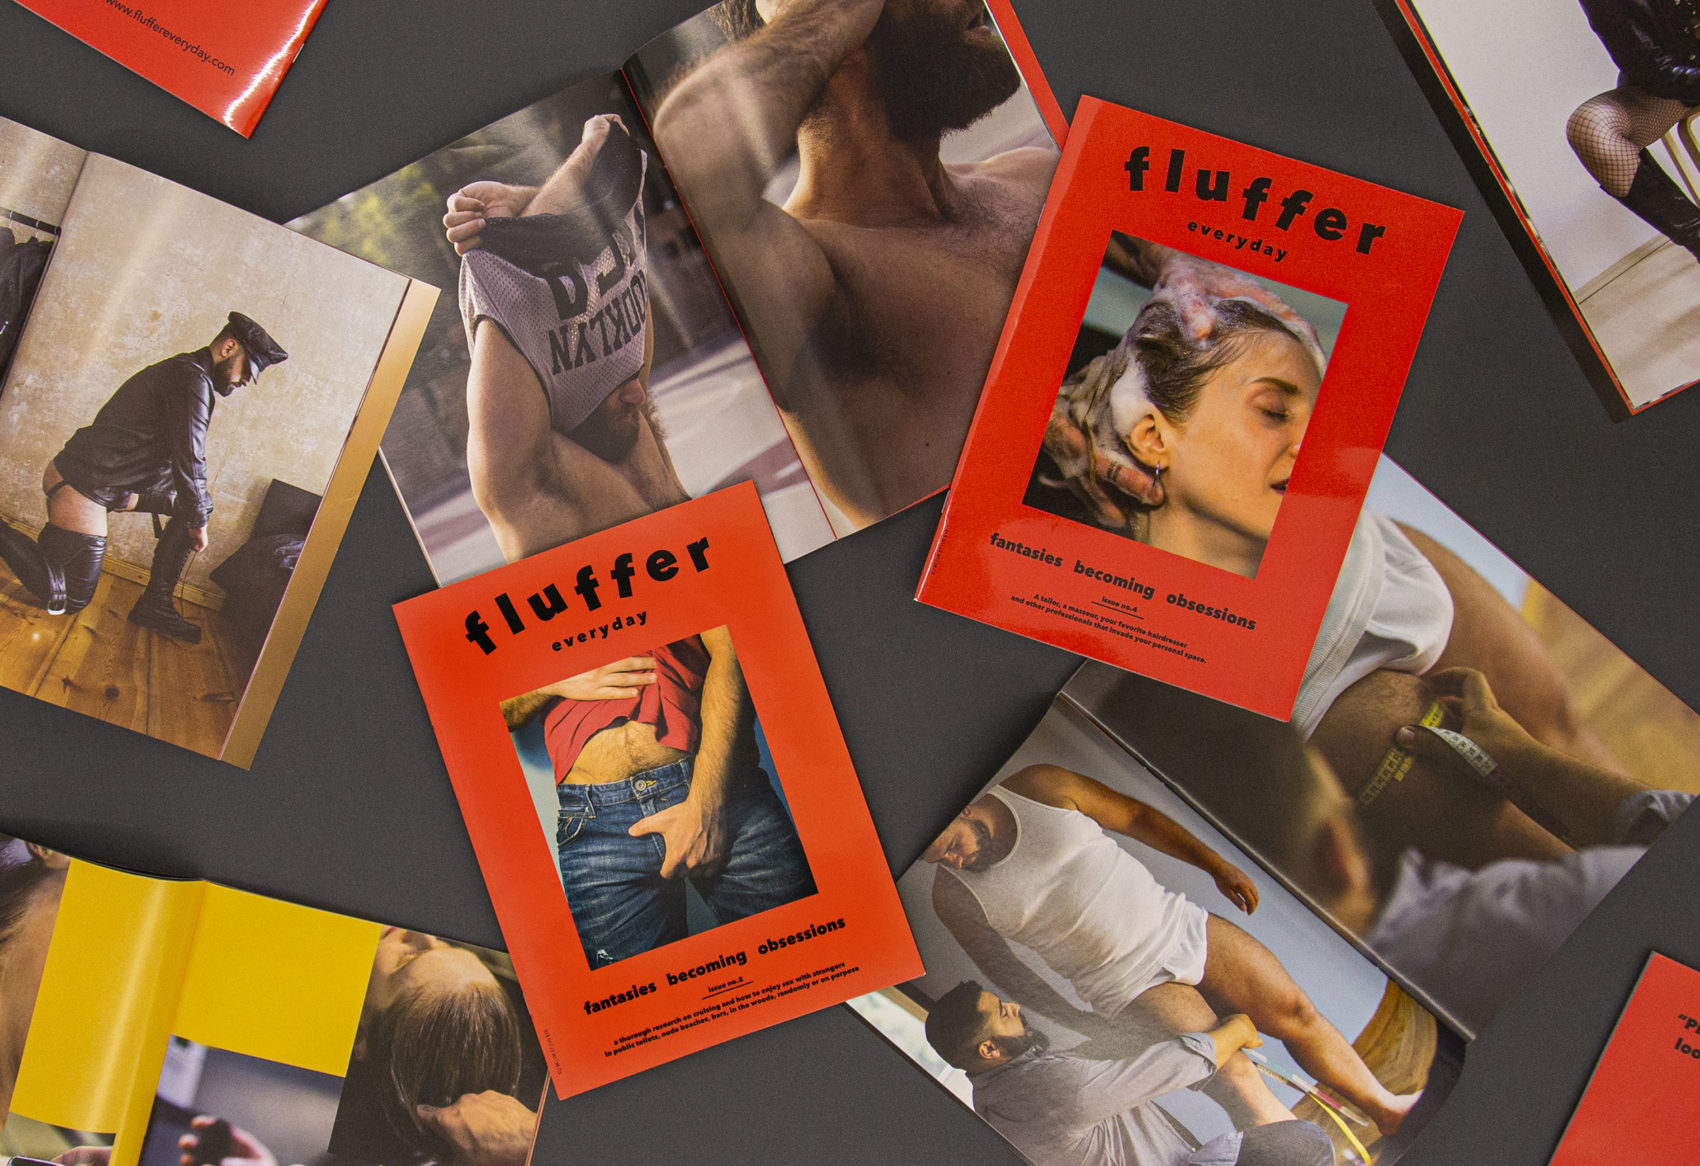 Fluffer Everyday & The Dreamer - Paris Ass Book Fair